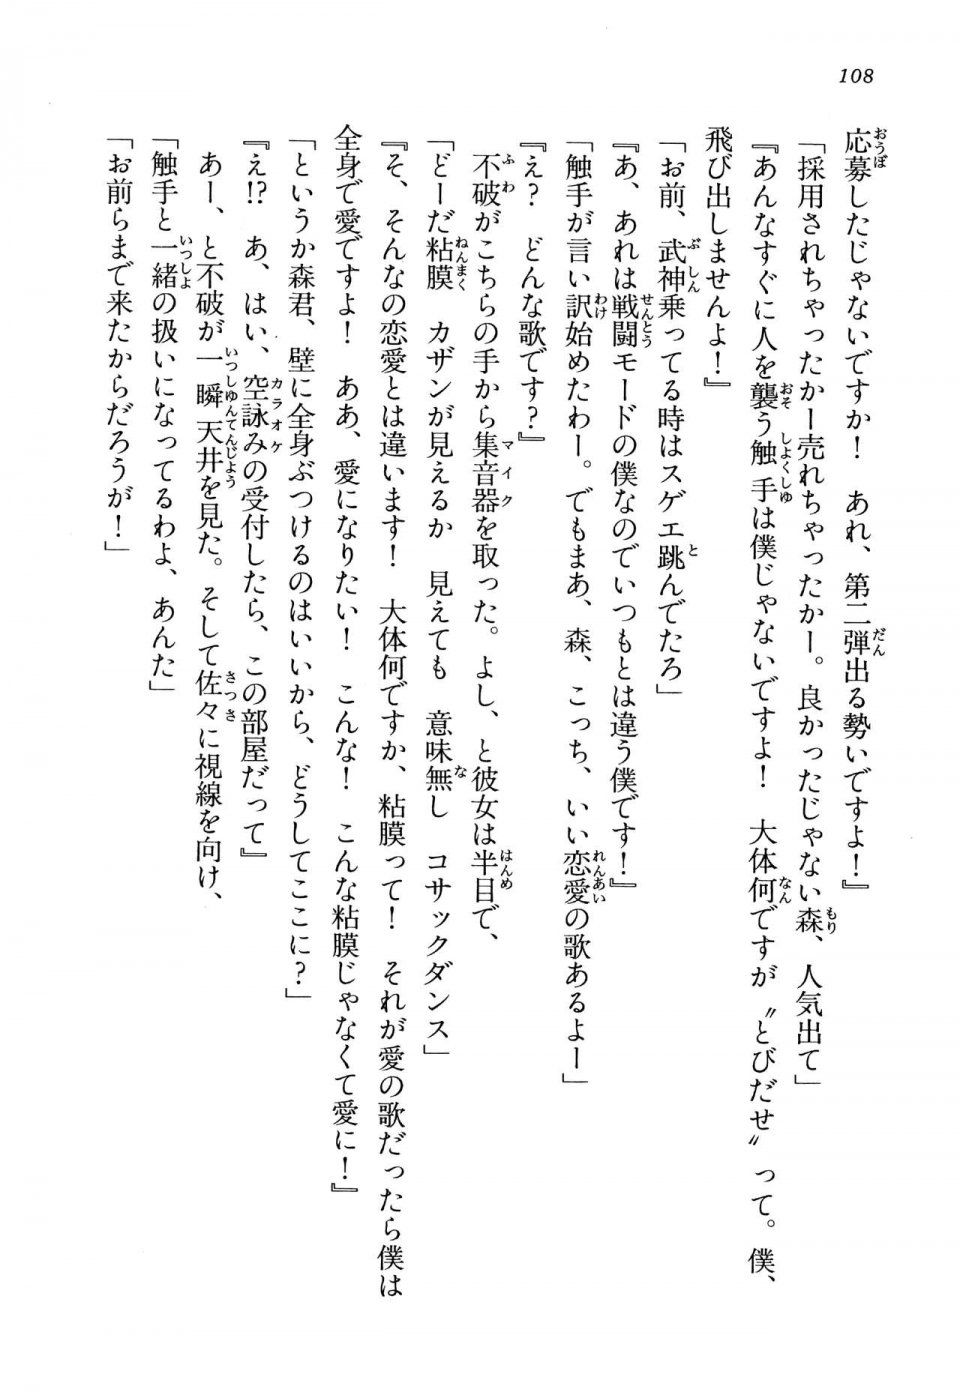 Kyoukai Senjou no Horizon LN Vol 13(6A) - Photo #108